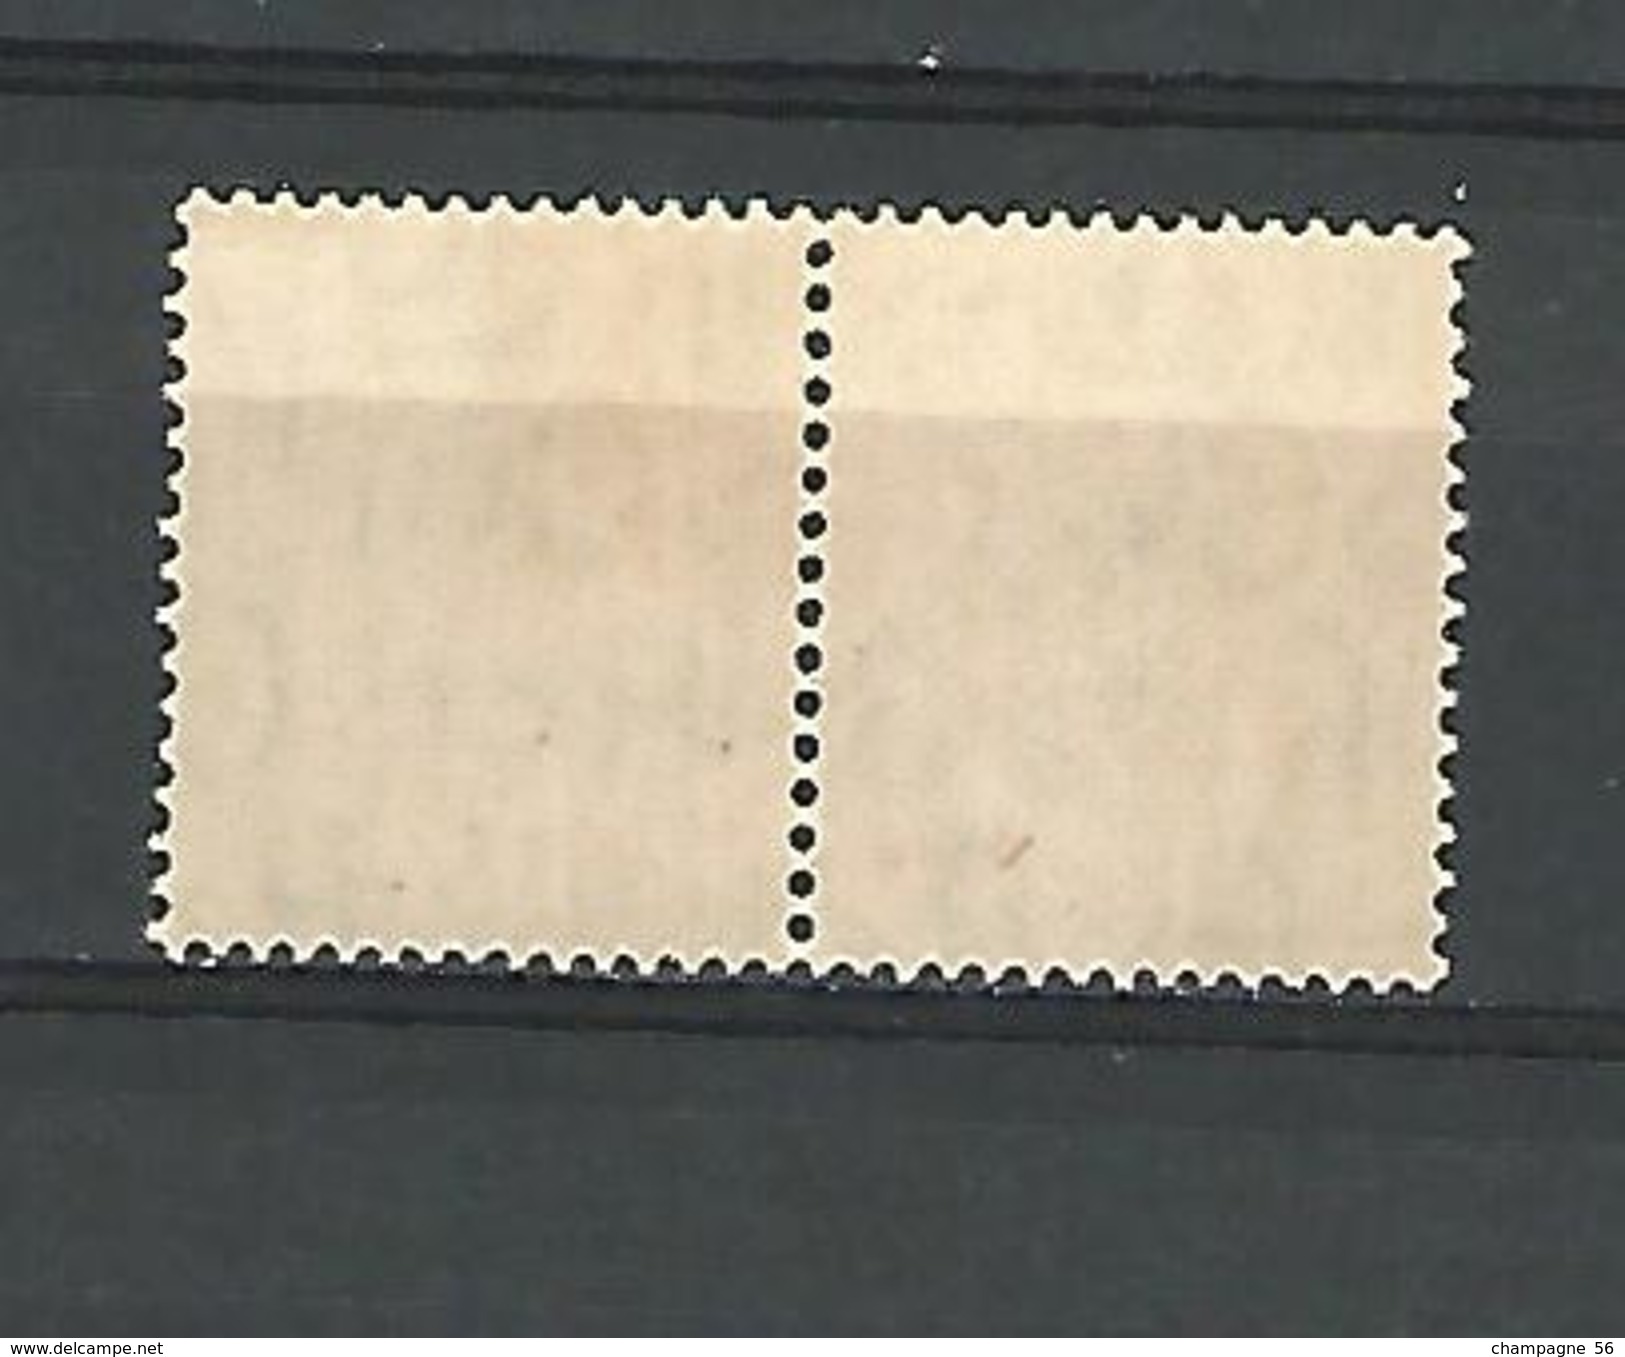 1937 - 47  N° 216  SE-TENANT  5 D. BRUN    GEORGES VI  NEUF ** GOMME YVERT TELLIER 1.00 € X 2 = 2.00 € - Unused Stamps